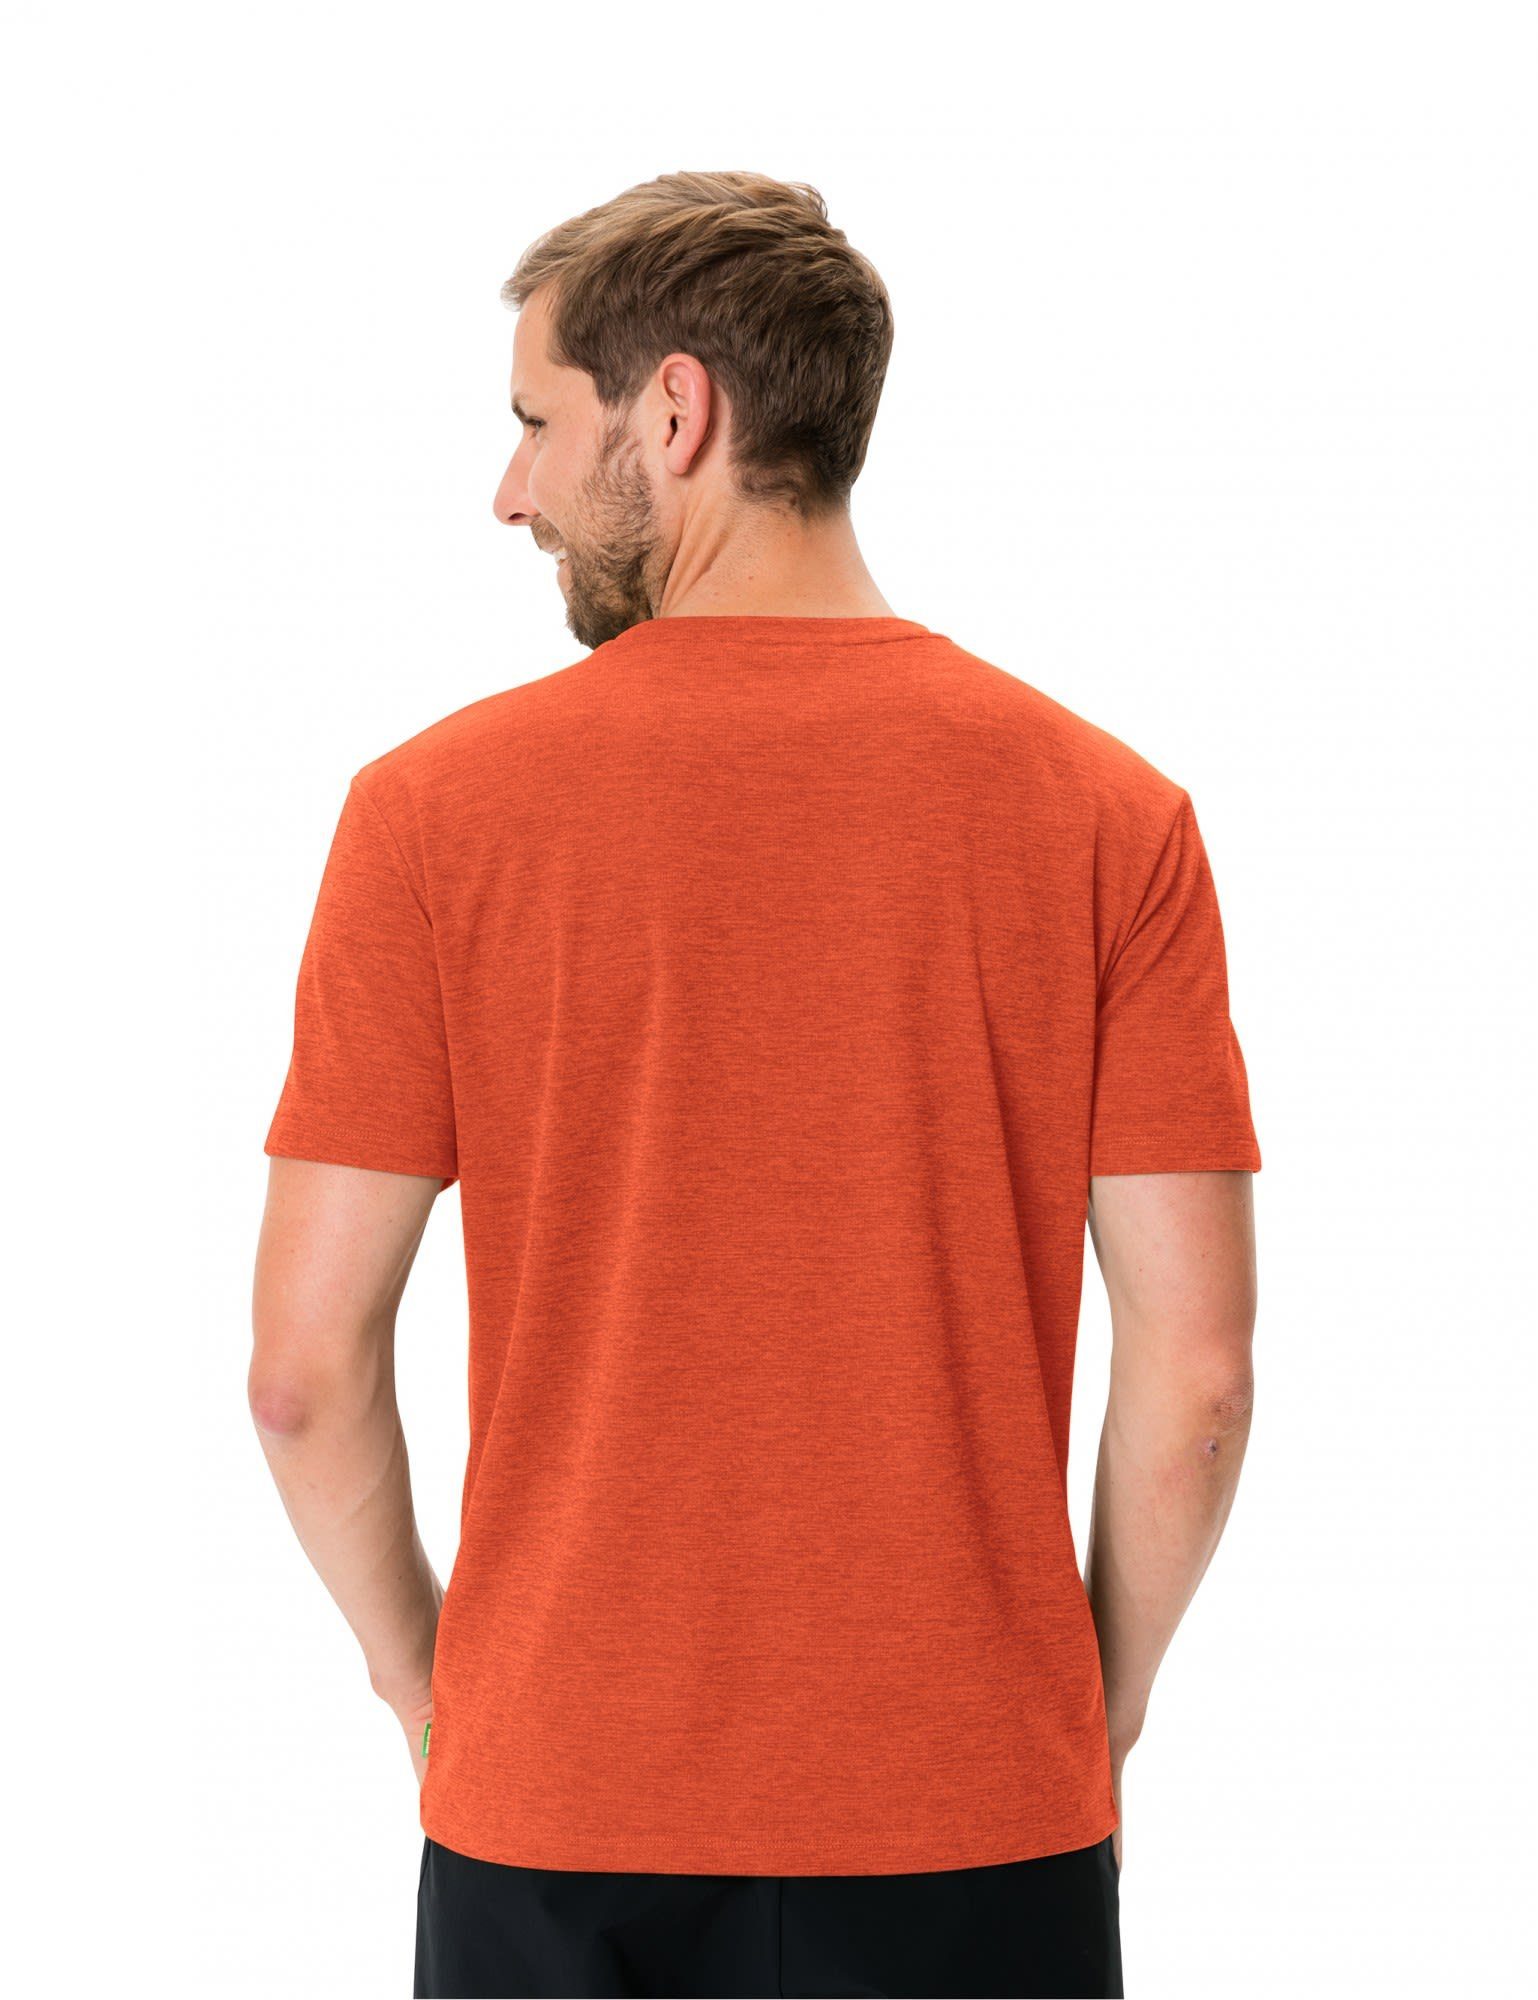 VAUDE T-Shirt Vaude Mens Red T-shirt Glowing Herren Kurzarm-Shirt Essential